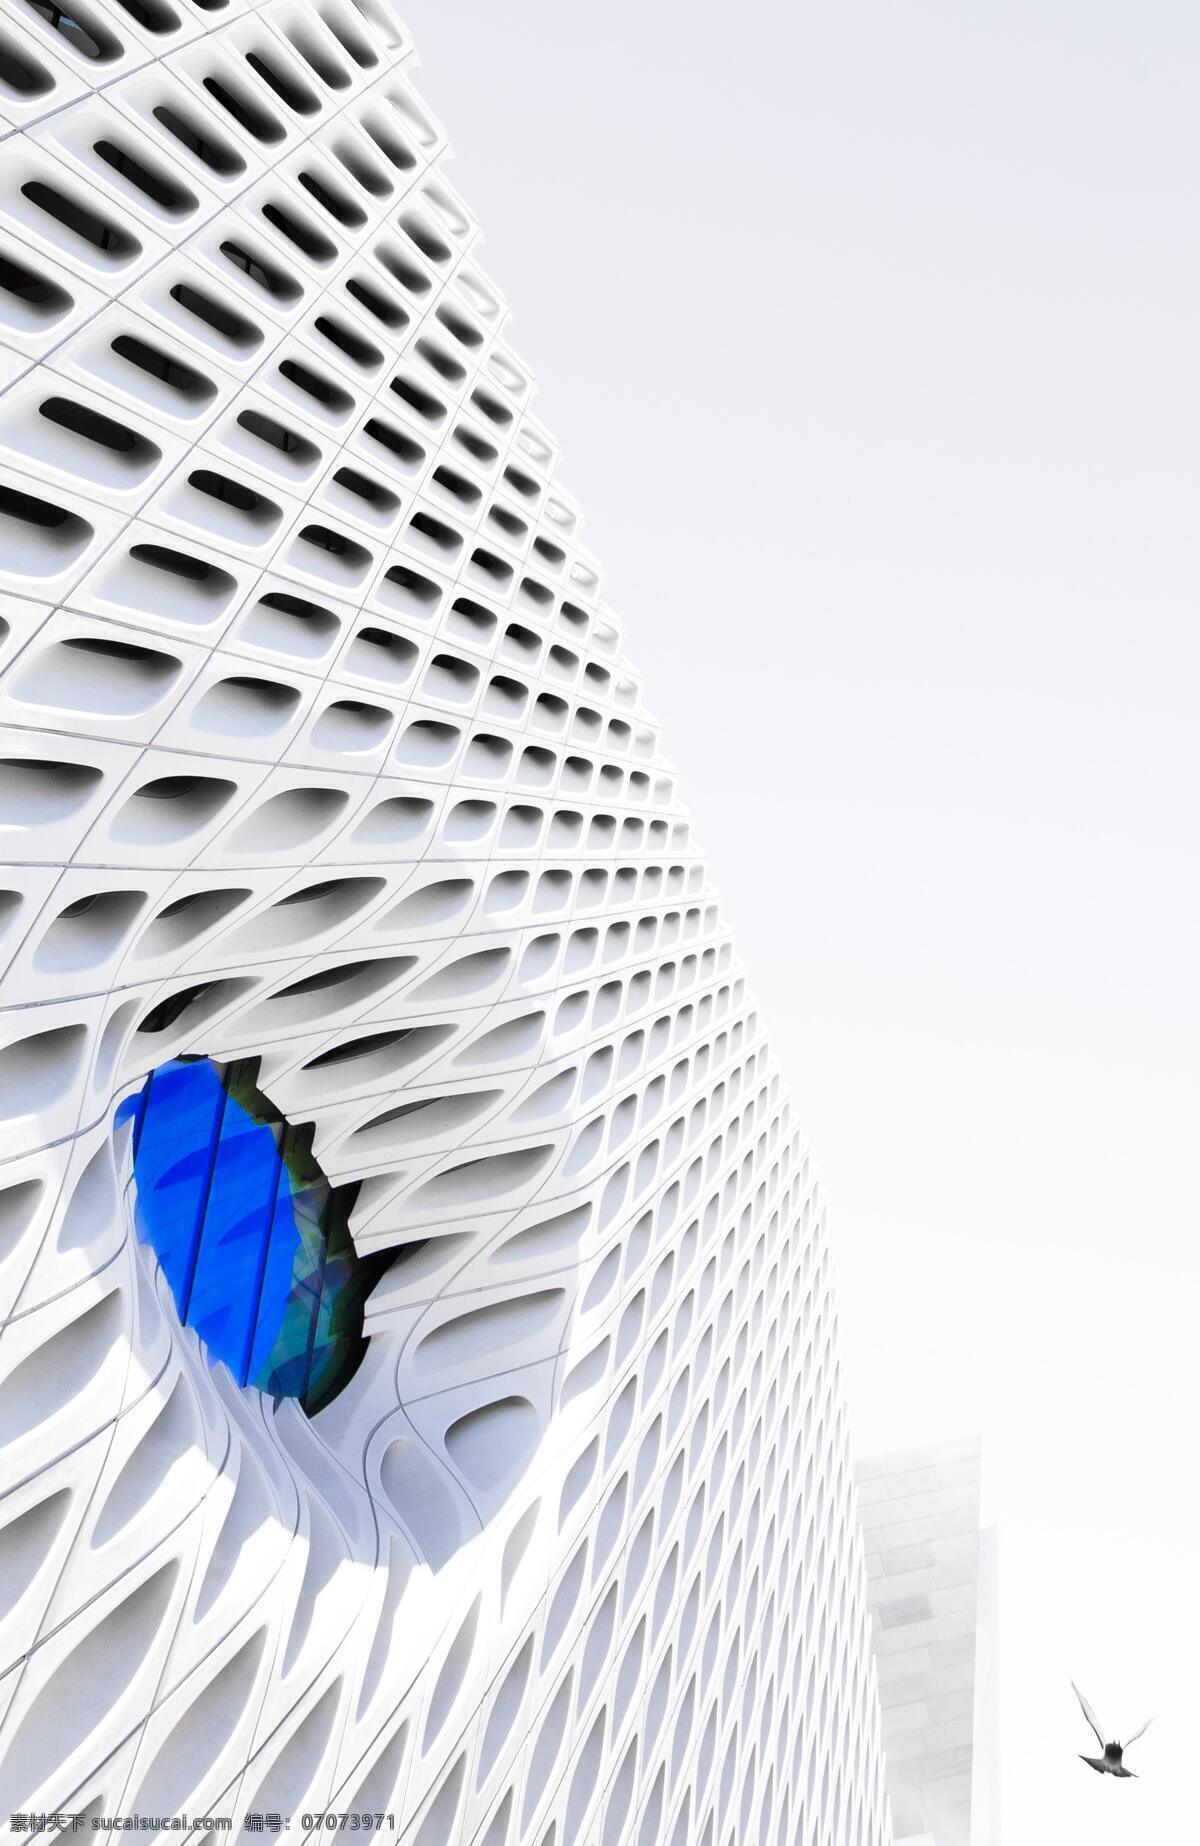 艺术 感 网格 建筑 艺术感 蓝色 白色 设计感 建筑简约 建筑园林 建筑摄影